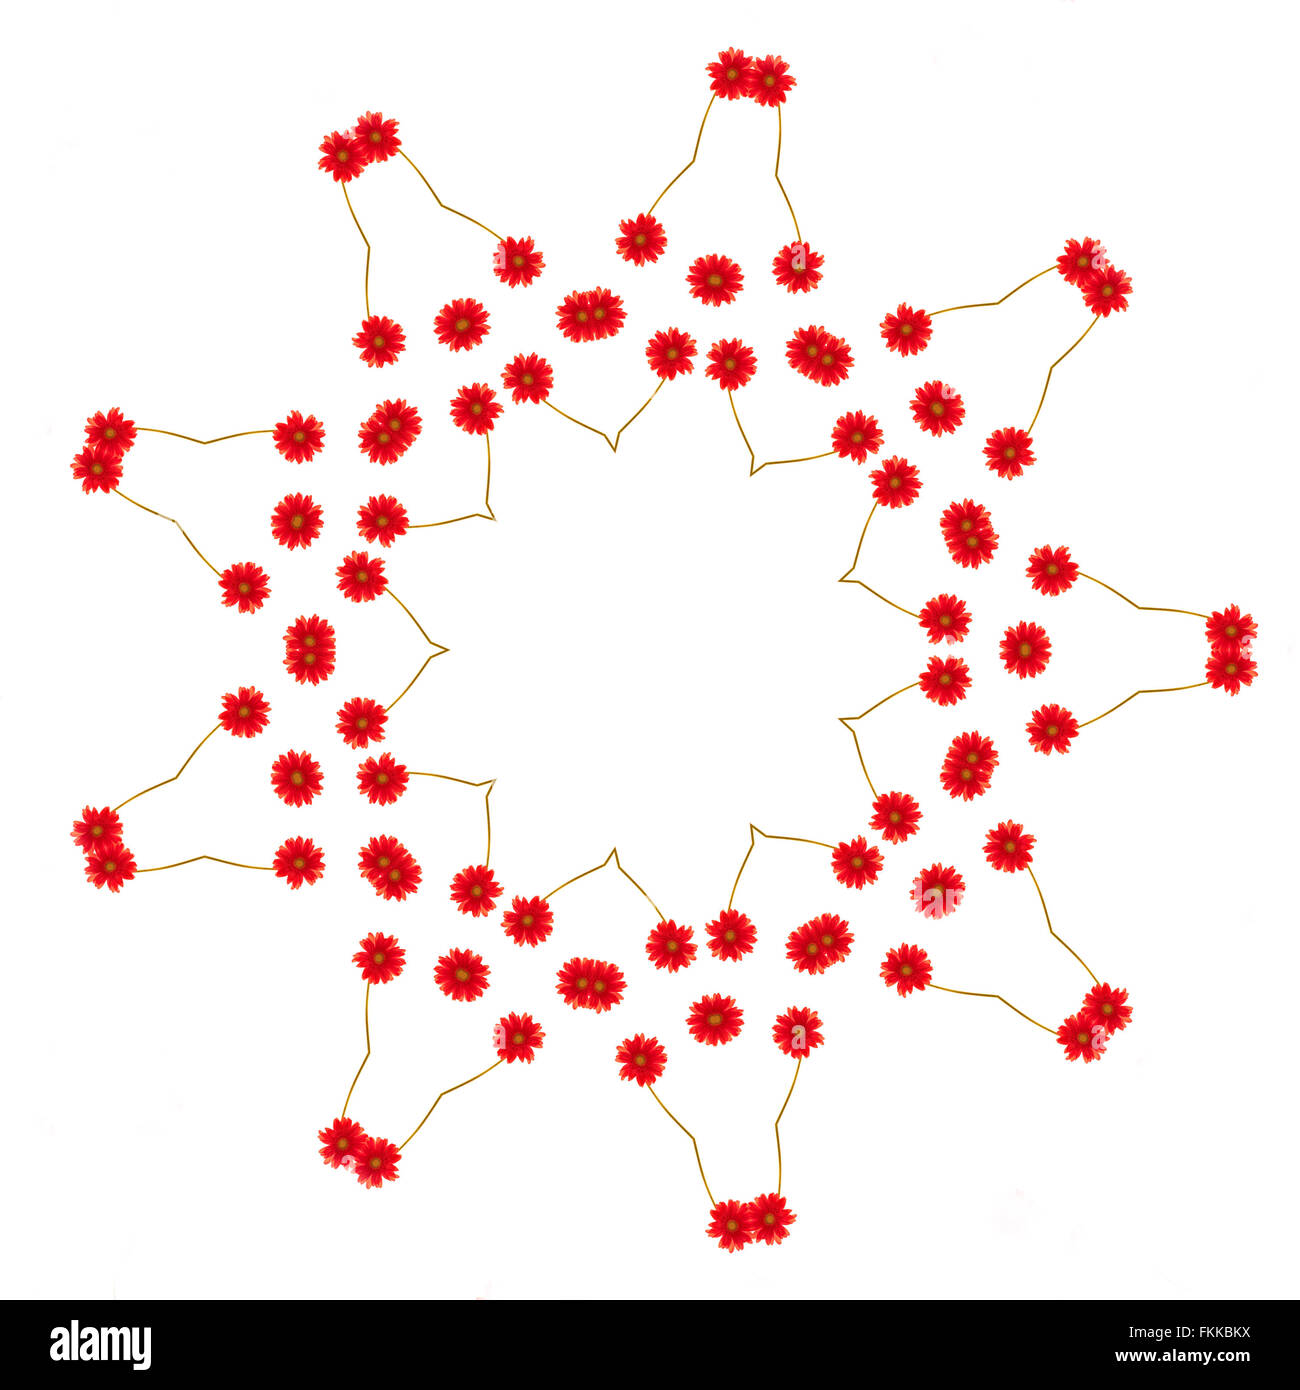 Zusammenfassung Hintergrund Kaleidoskop rote Blüten isoliert auf weißem Hintergrund Stockfoto